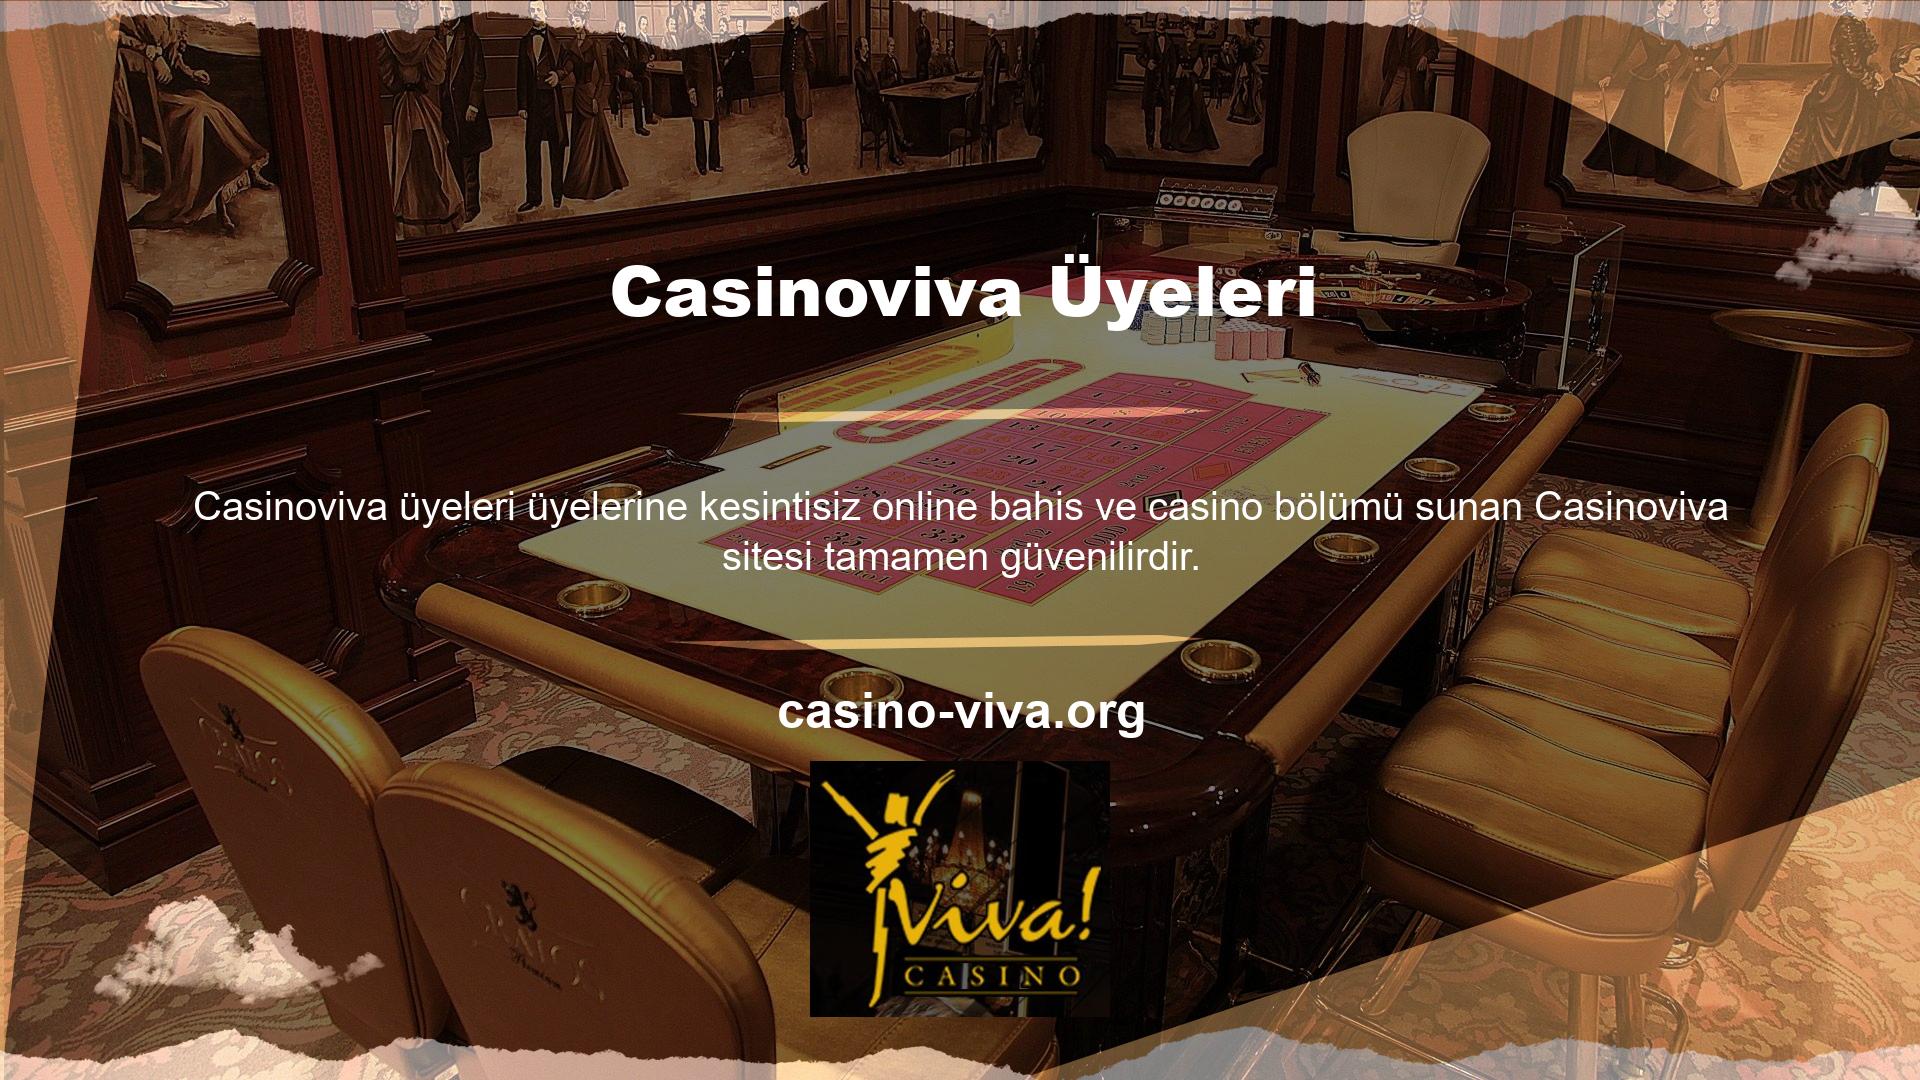 Casino tutkunları ve casino tutkunları, sitedeki tüm finansal işlemleri aracılar aracılığıyla gerçekleştirmektedir